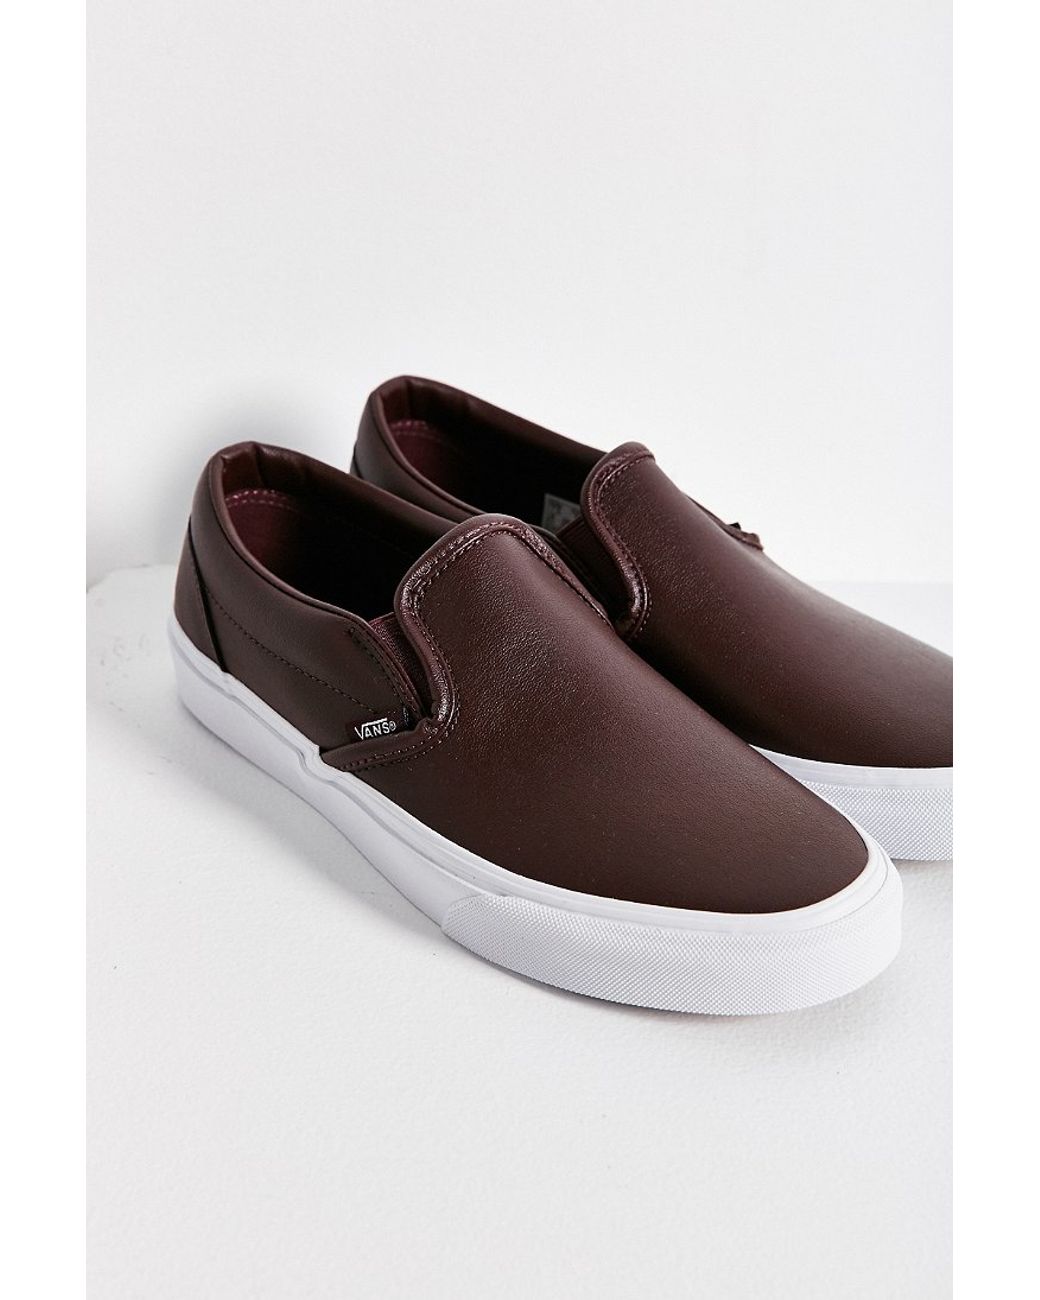 Vans Classic Leather Slip-on Sneaker in Maroon (Brown) | Lyst